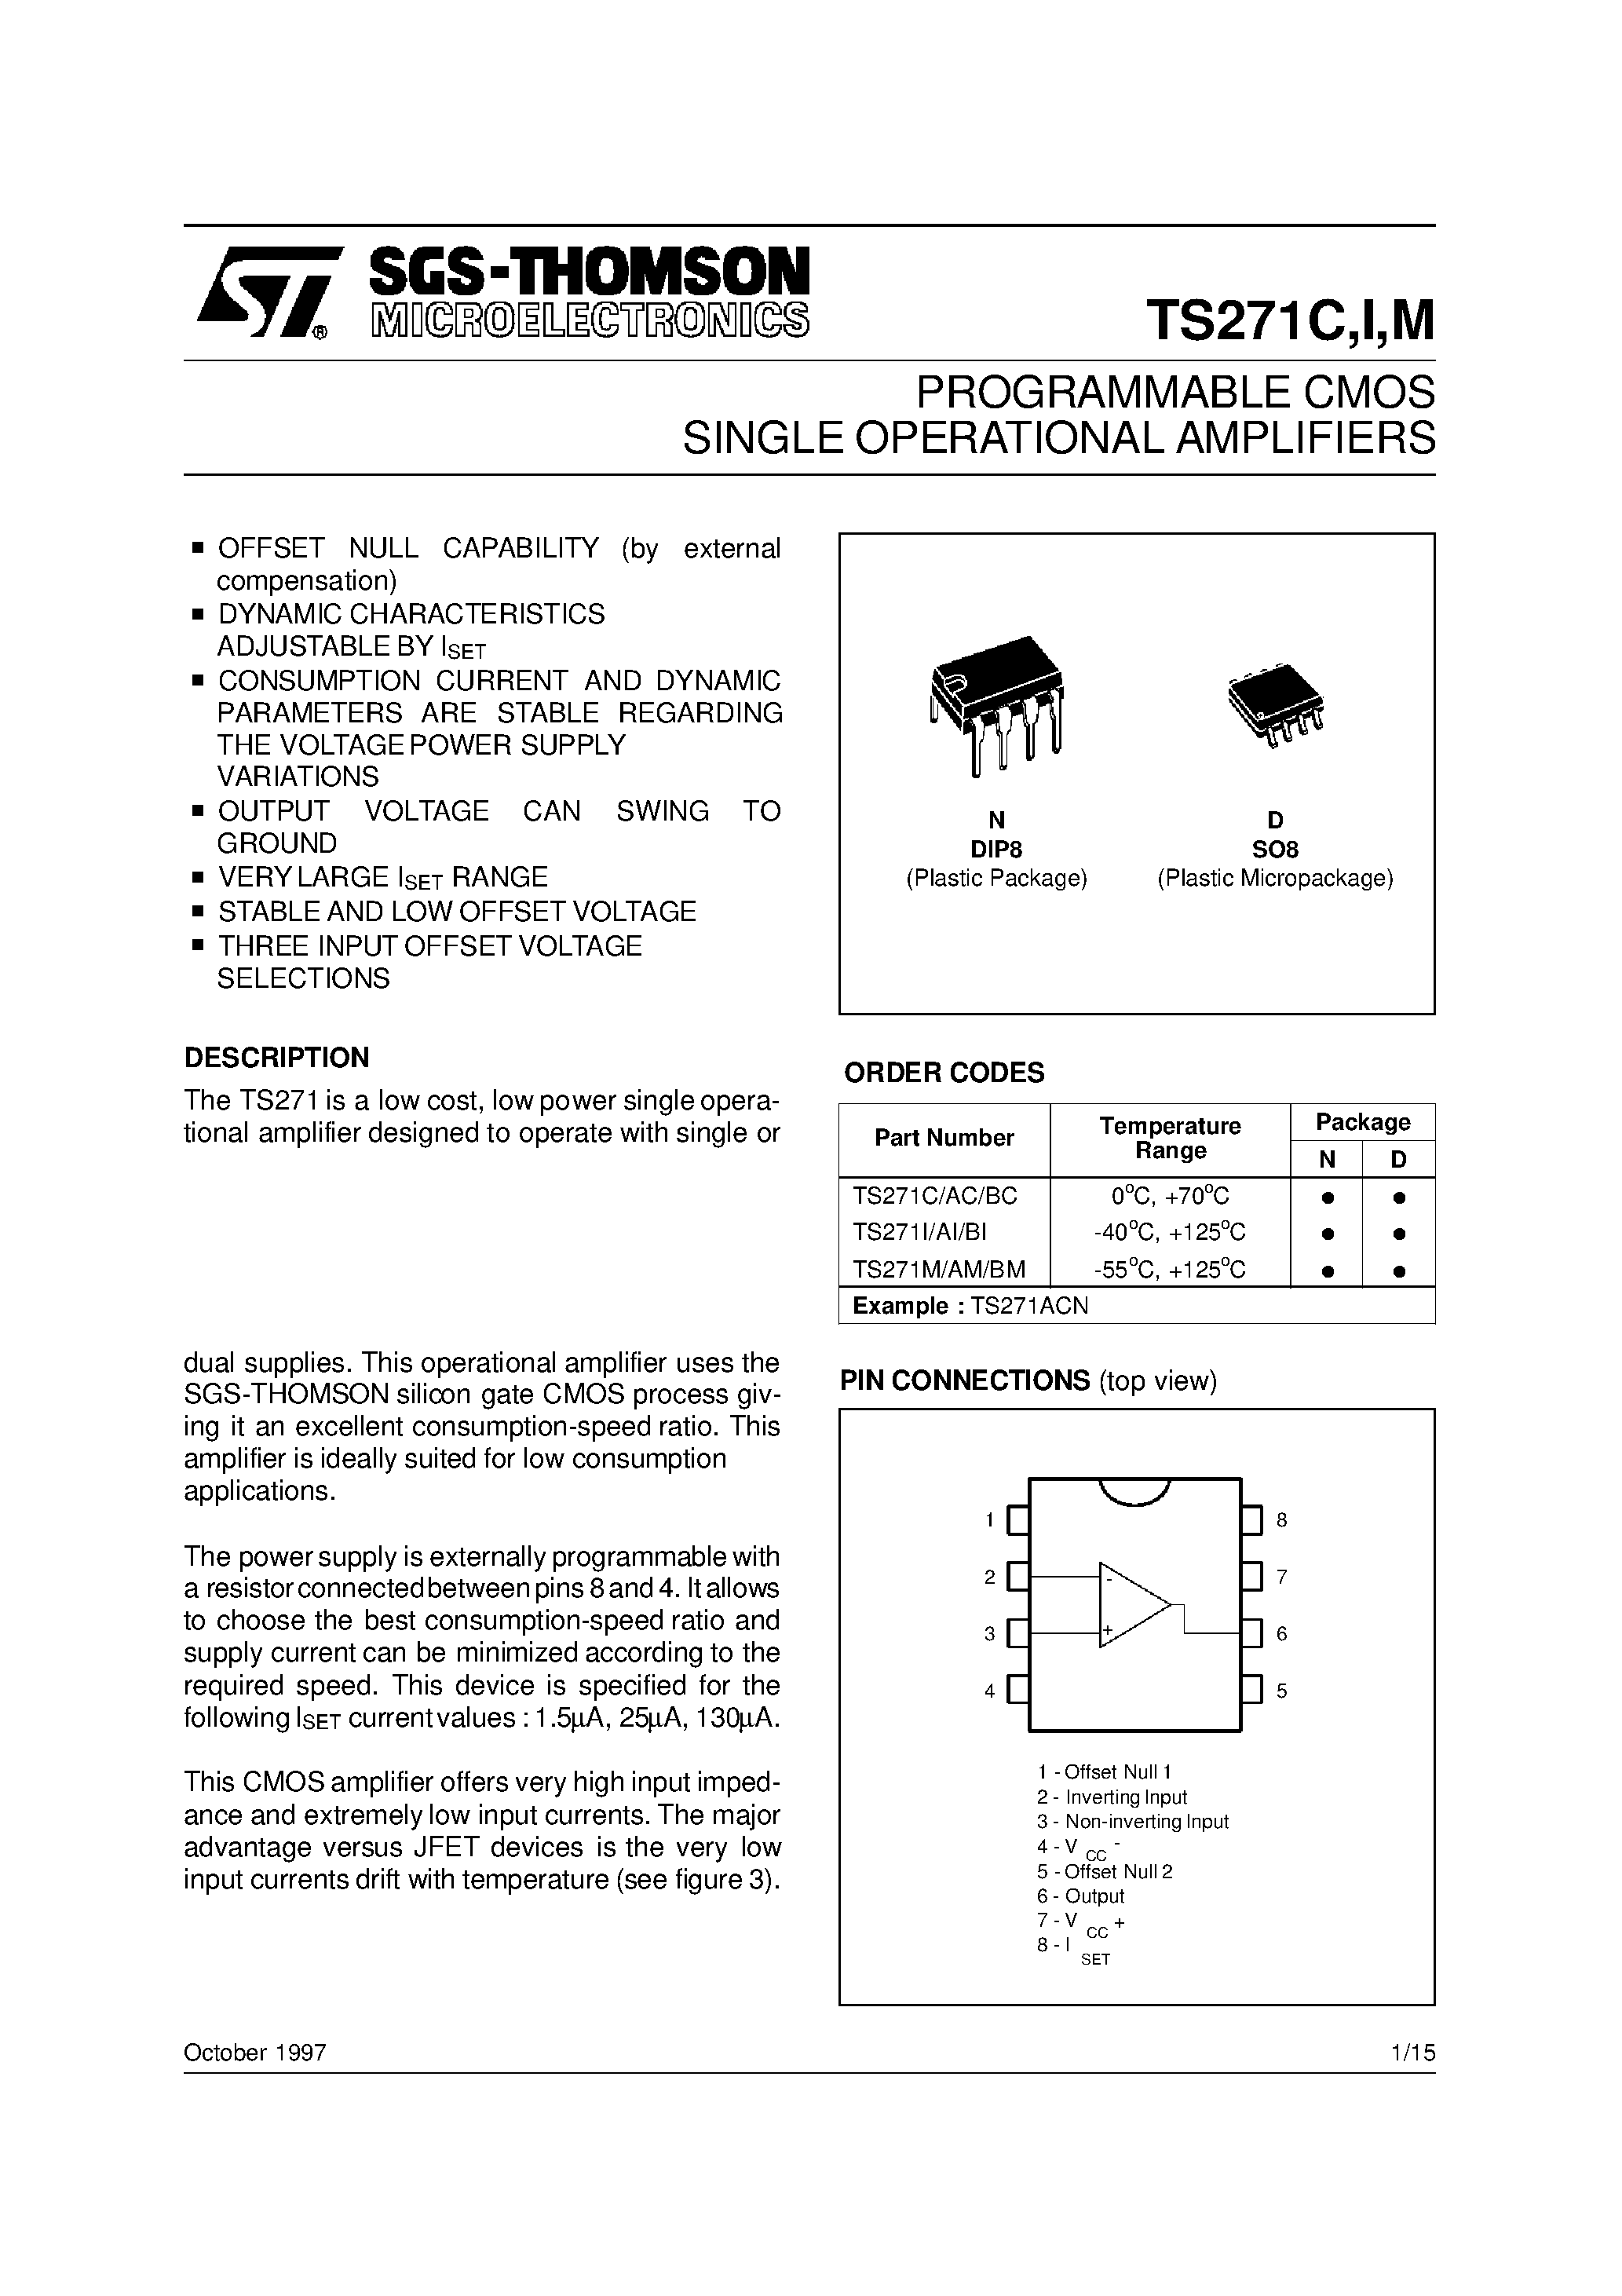 Даташит TS271AI - PROGRAMMABLE CMOS SINGLE OPERATIONAL AMPLIFIERS страница 1